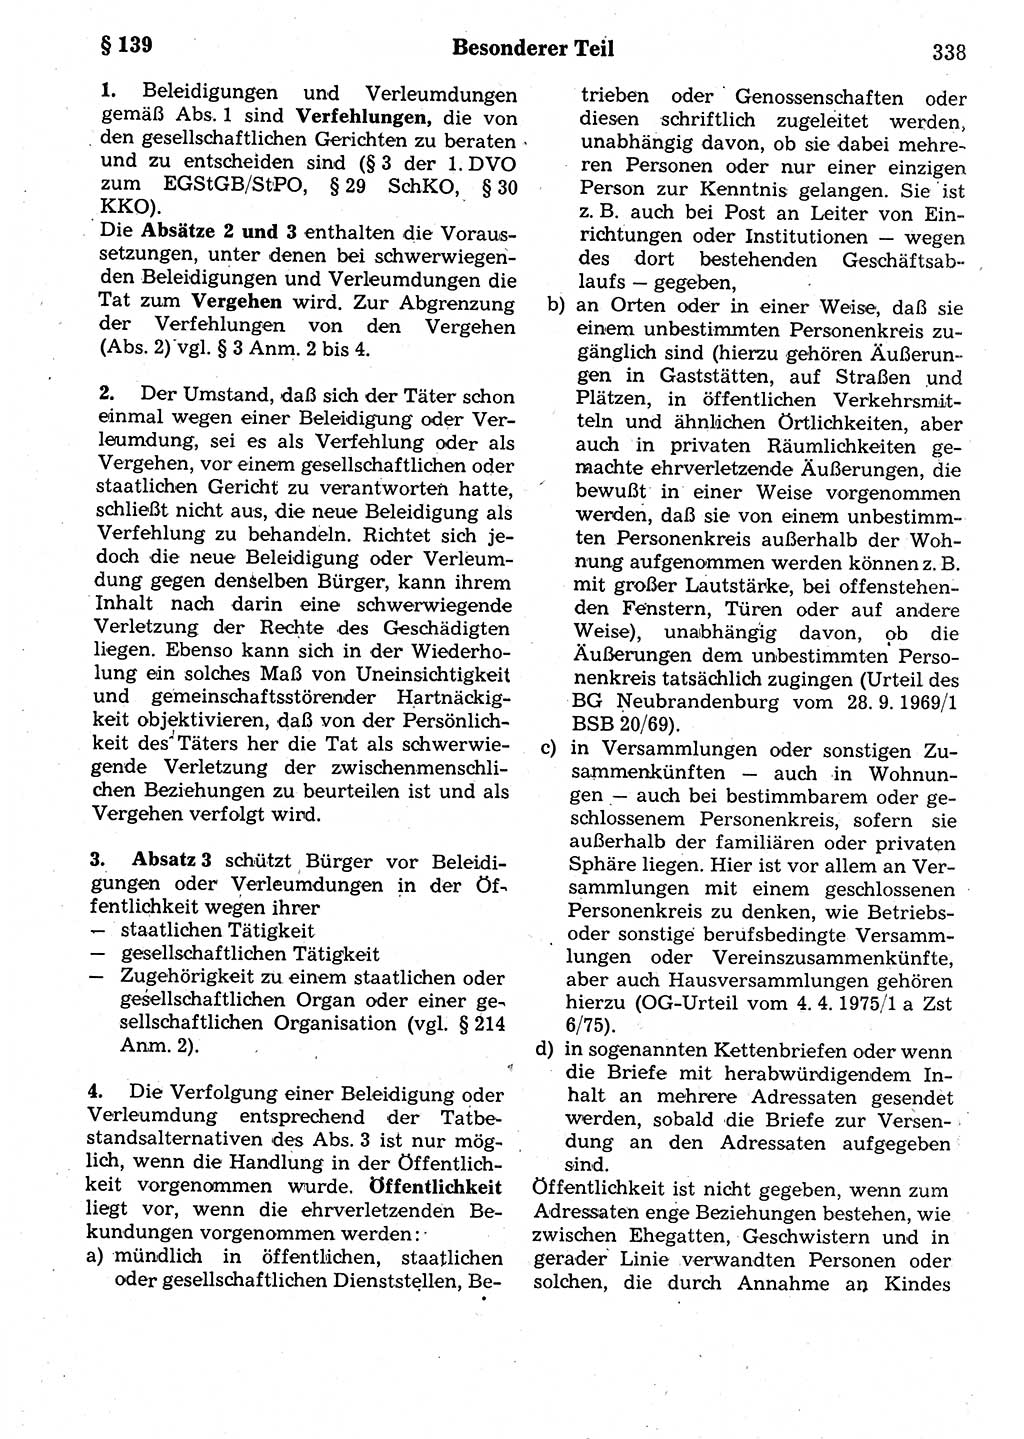 Strafrecht der Deutschen Demokratischen Republik (DDR), Kommentar zum Strafgesetzbuch (StGB) 1987, Seite 338 (Strafr. DDR Komm. StGB 1987, S. 338)